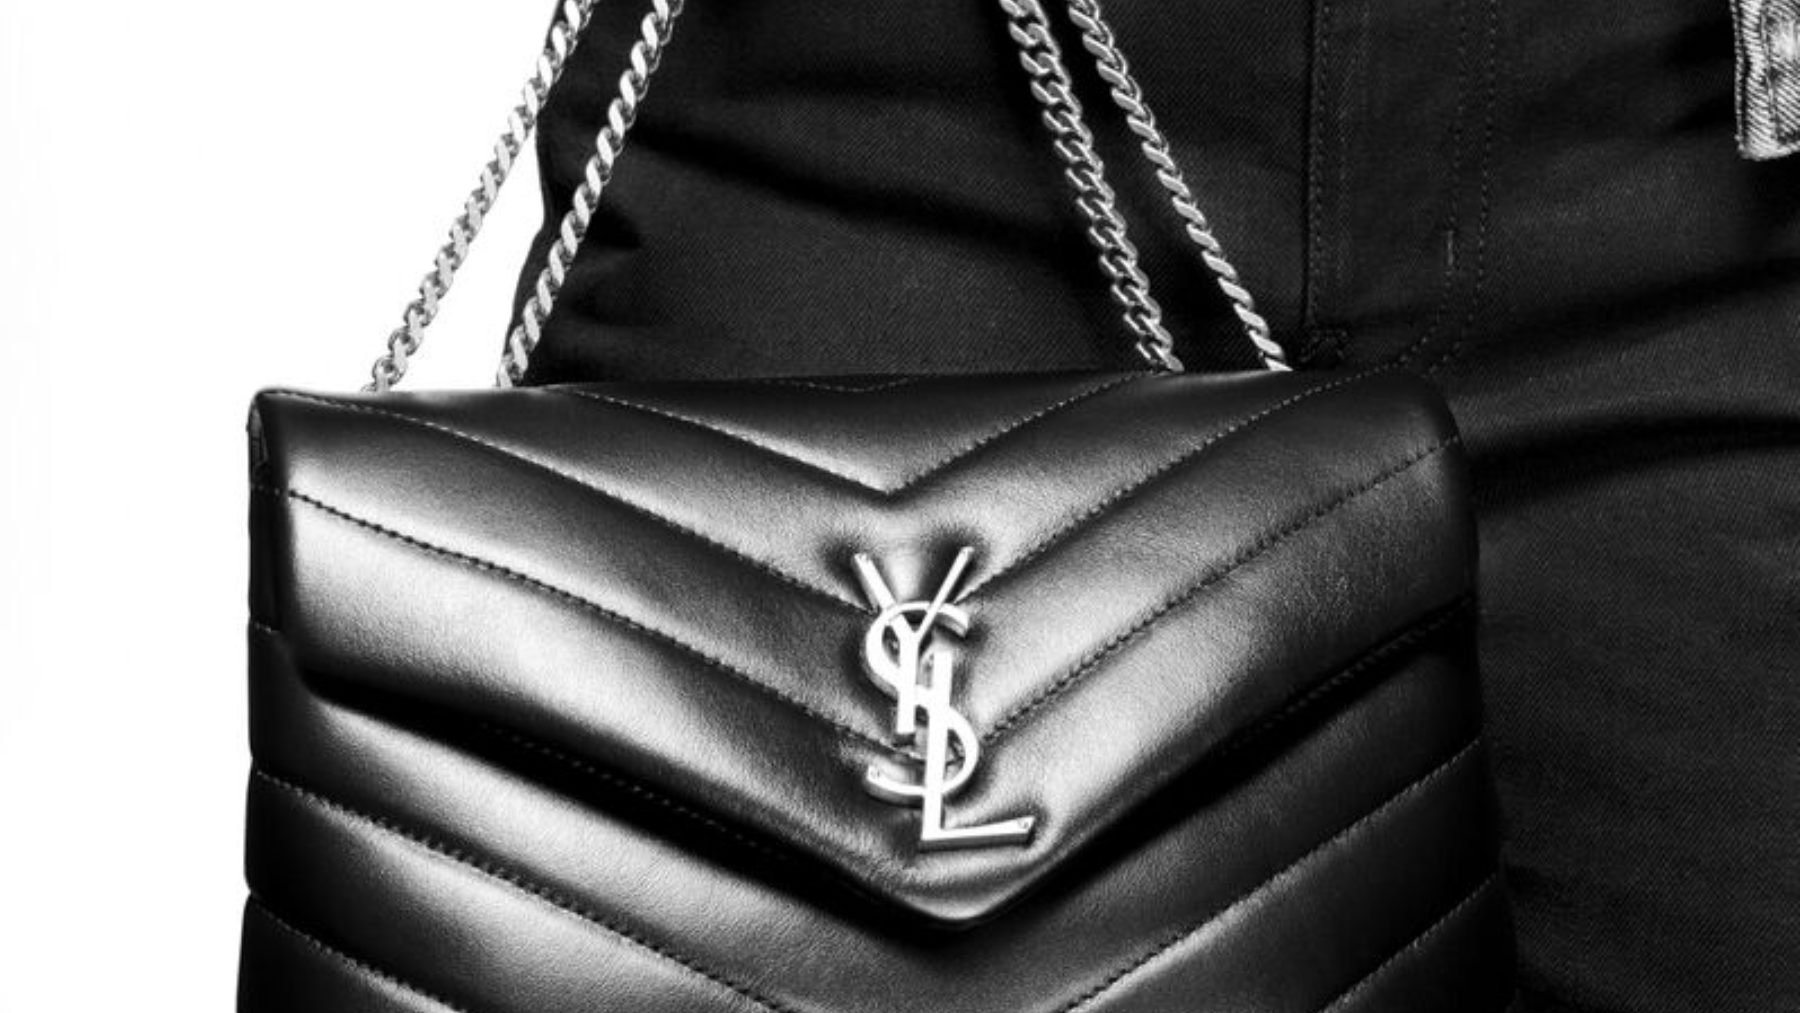 carolino artería Delicioso Sfera tiene bolso que parece de Yves Saint Laurent 1.600 euros más barato